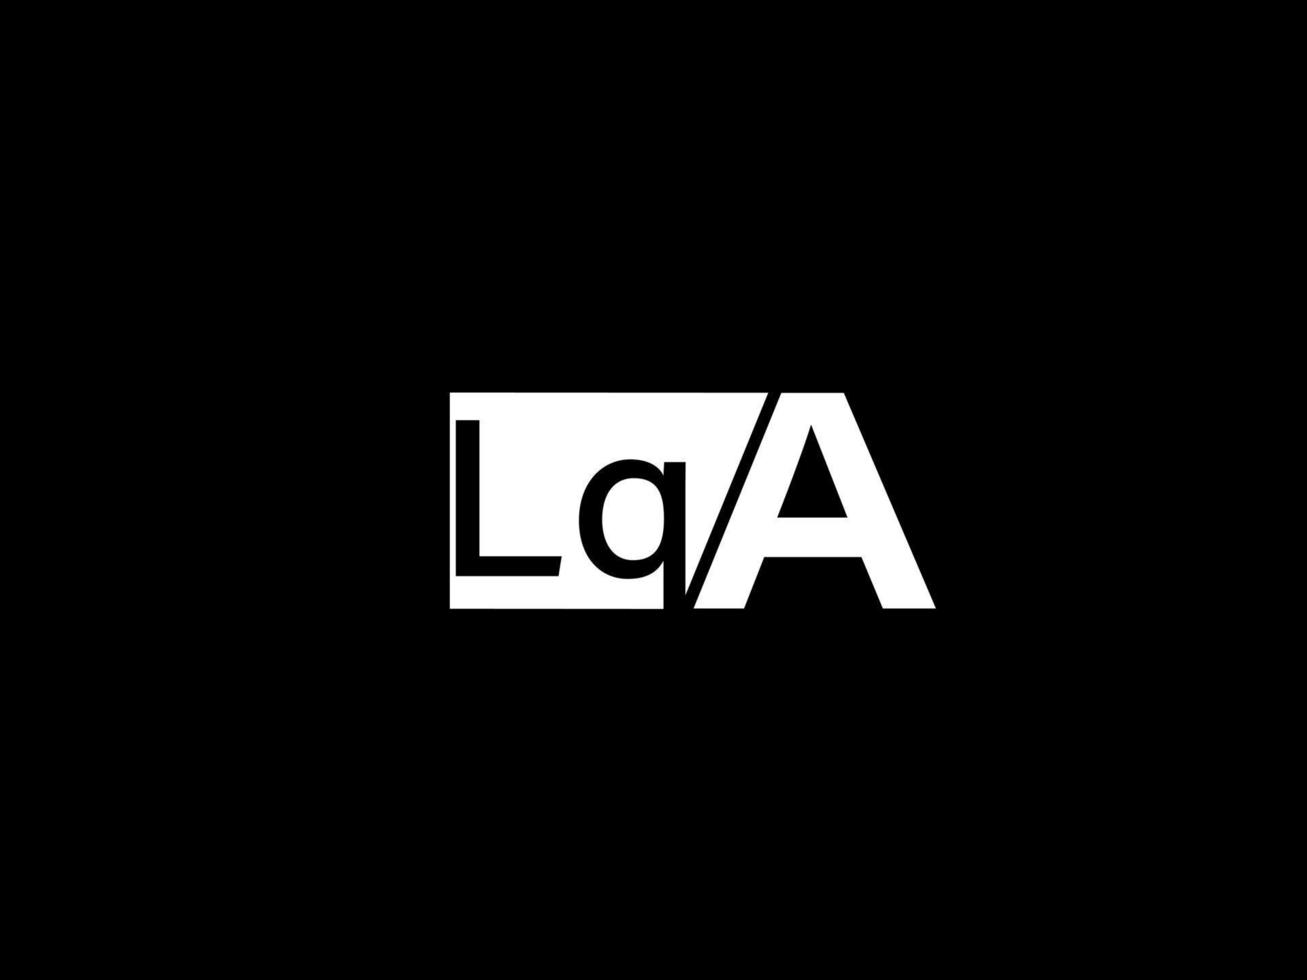 lqa logotyp och grafik design vektor konst, ikoner isolerat på svart bakgrund